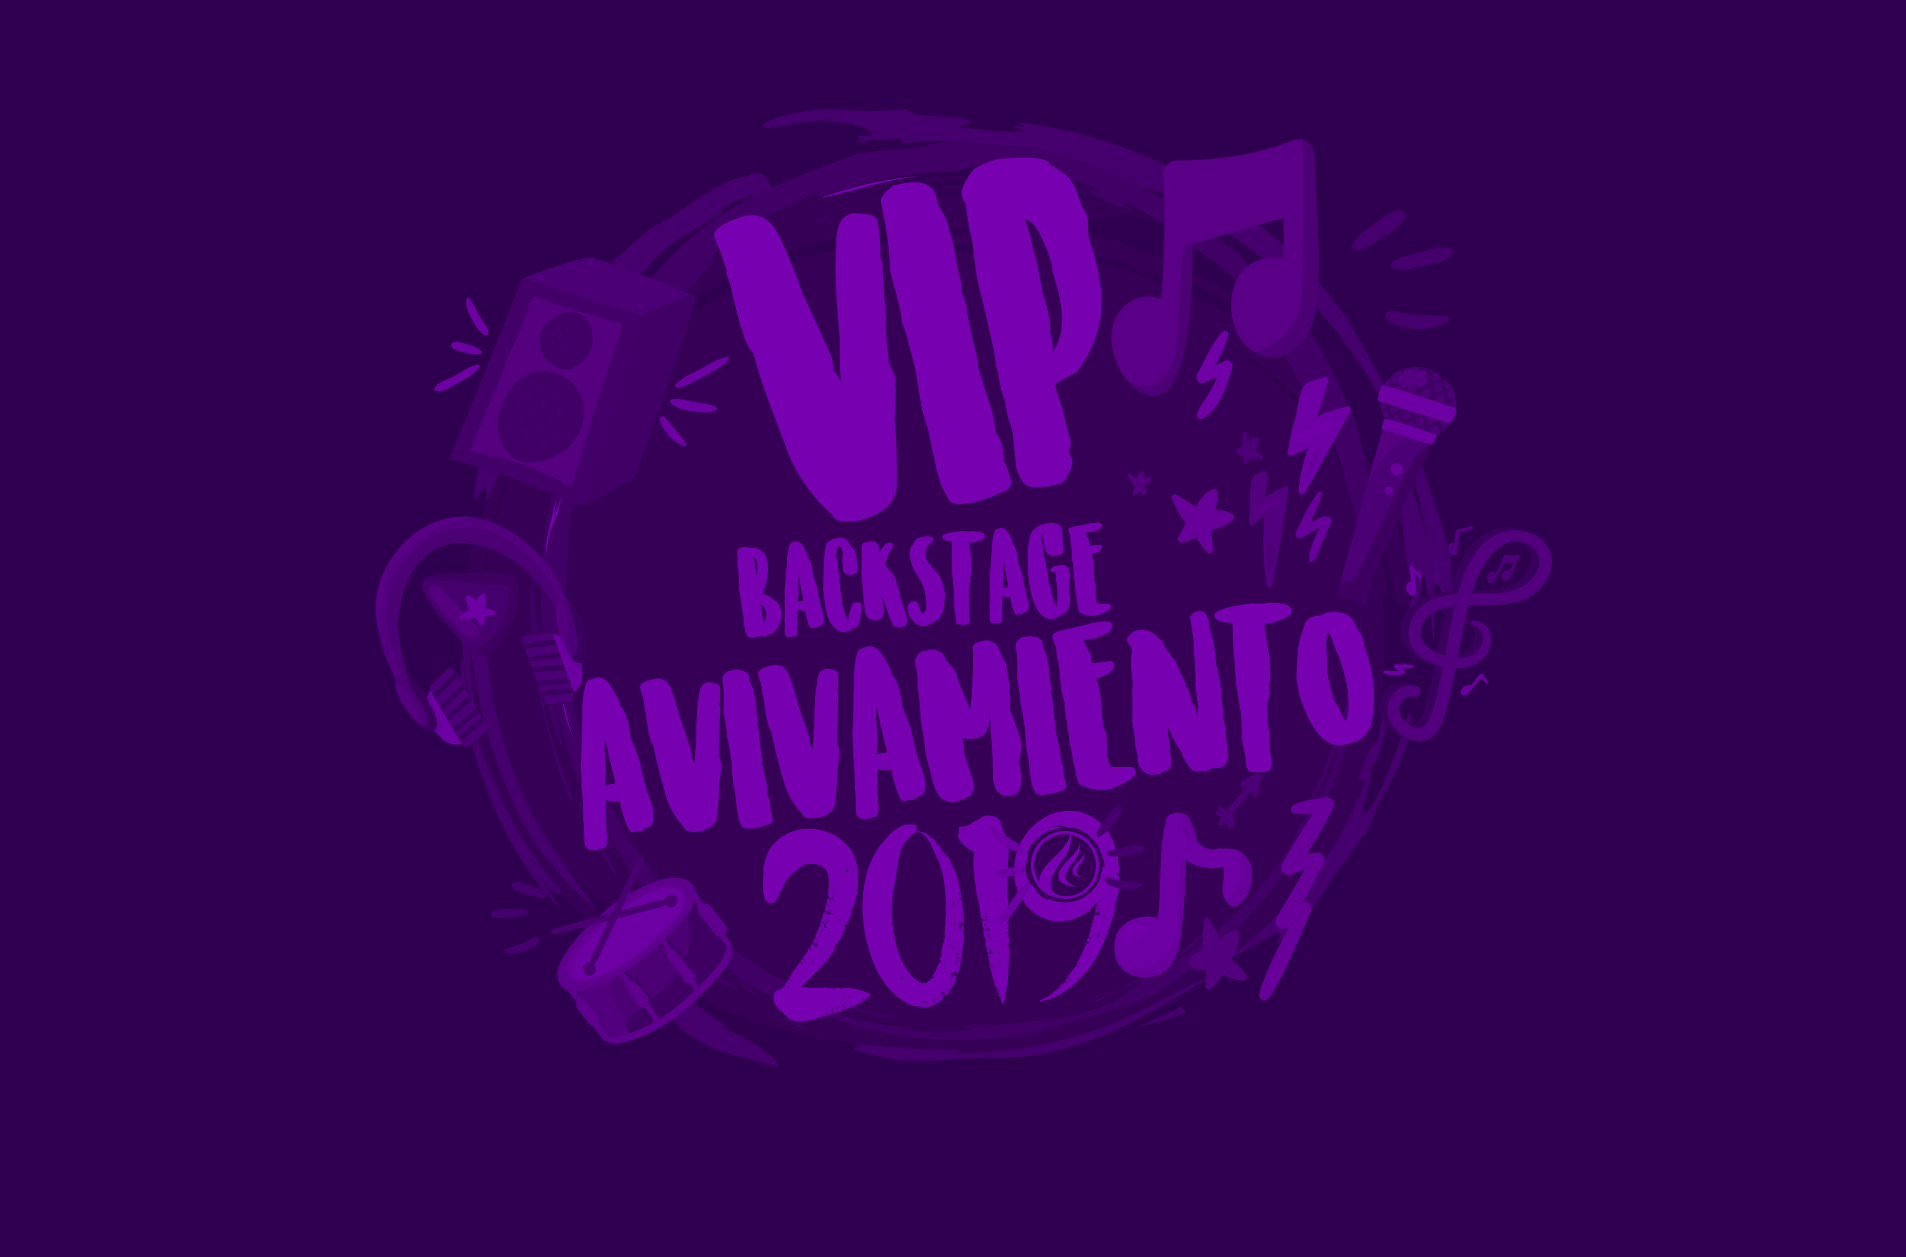 Participa en el concurso del VIP Backstage 2019